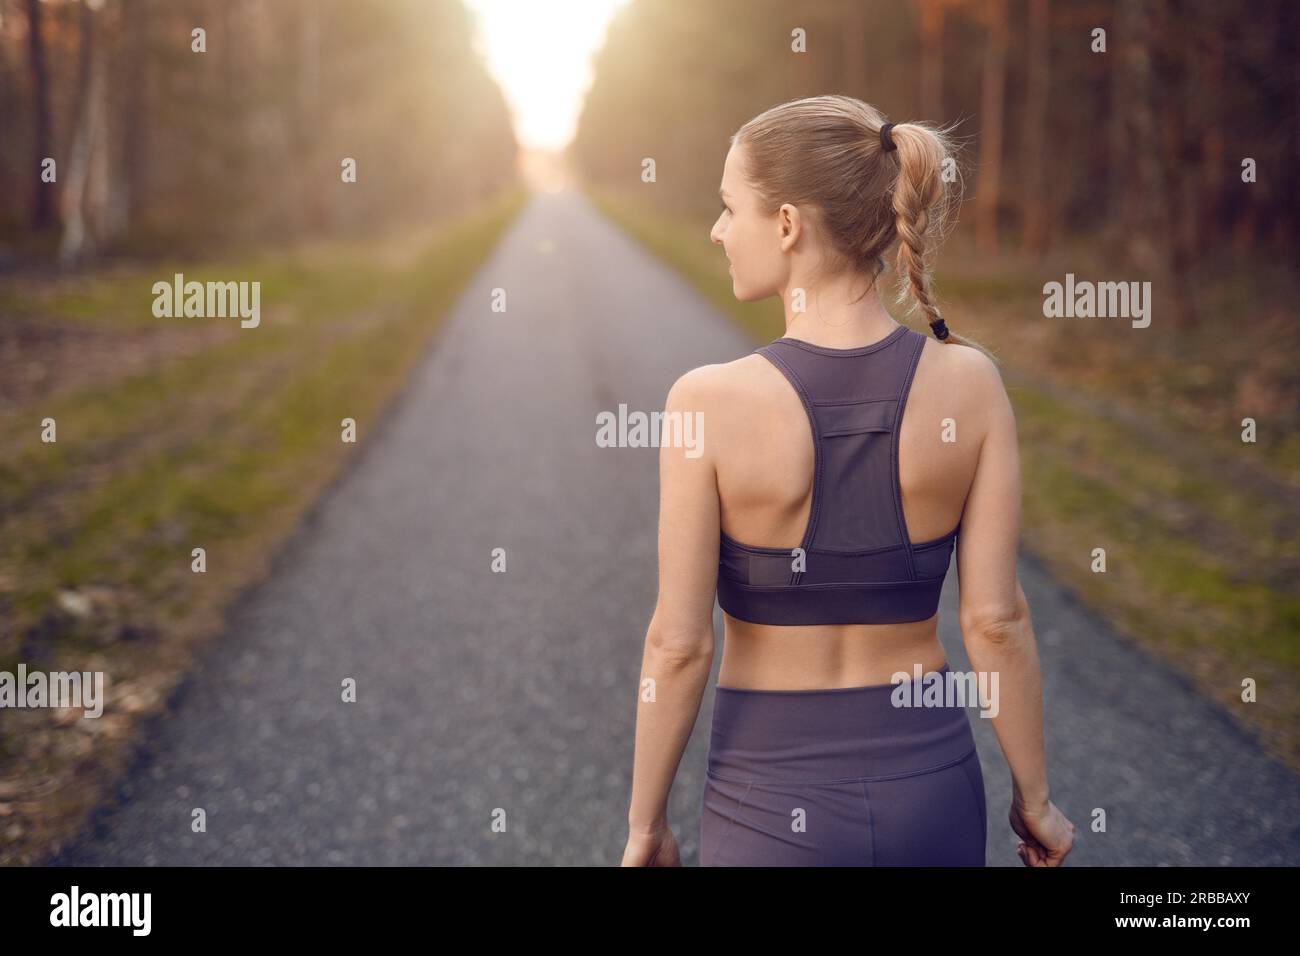 Sportlich gesunde junge Frau zu Fuß bei Sonnenaufgang entlang einer Landstraße durch einen dichten Wald in Richtung der Schein der Sonne am Ende zwischen den Bäumen in A Stockfoto